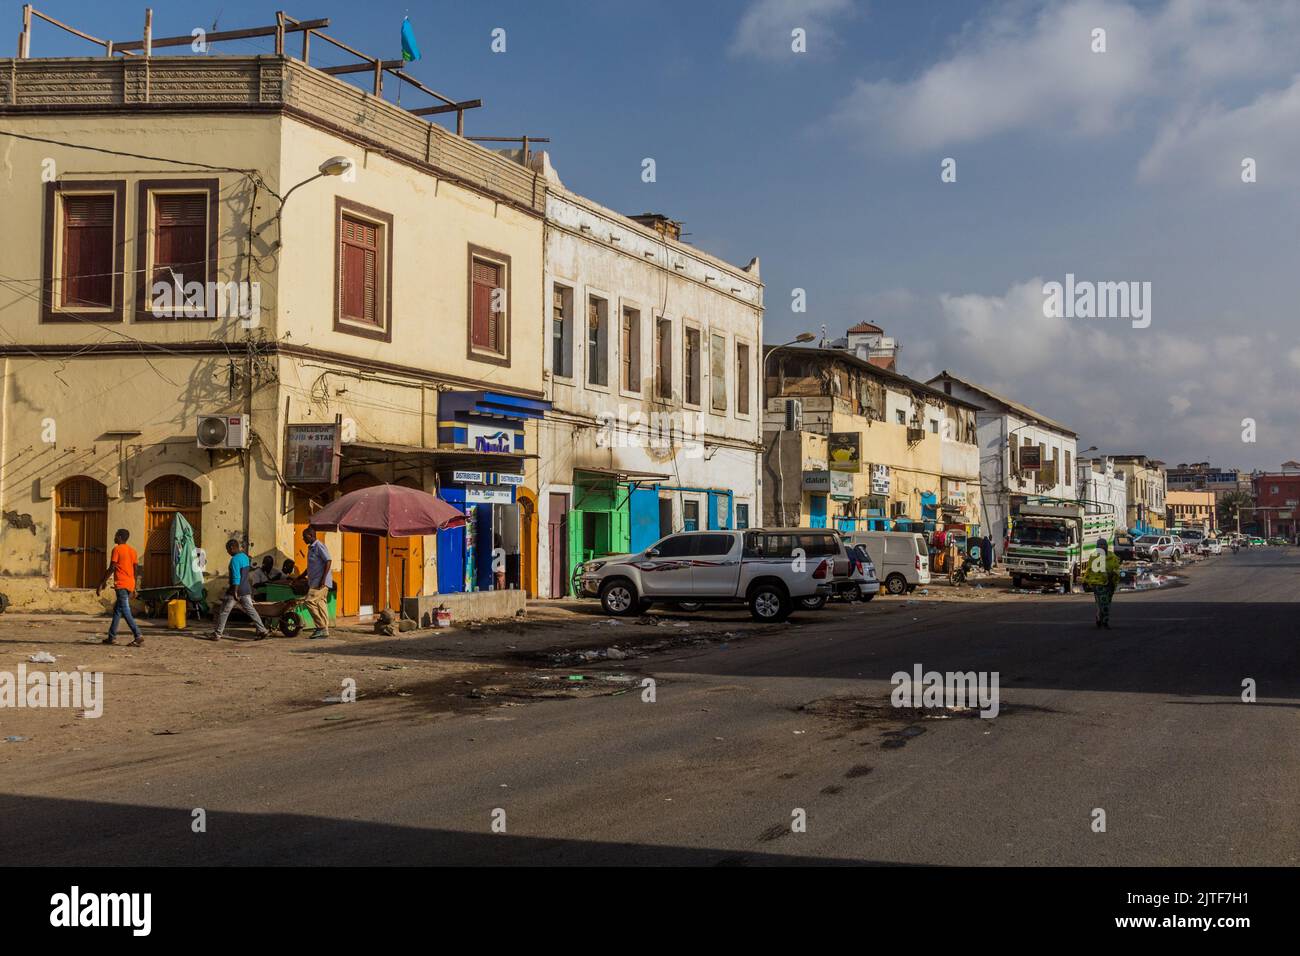 DJIBOUTI, DJIBOUTI - 17 AVRIL 2019 : vue d'une rue dans le quartier africain de Djibouti, capitale de Djibouti. Banque D'Images